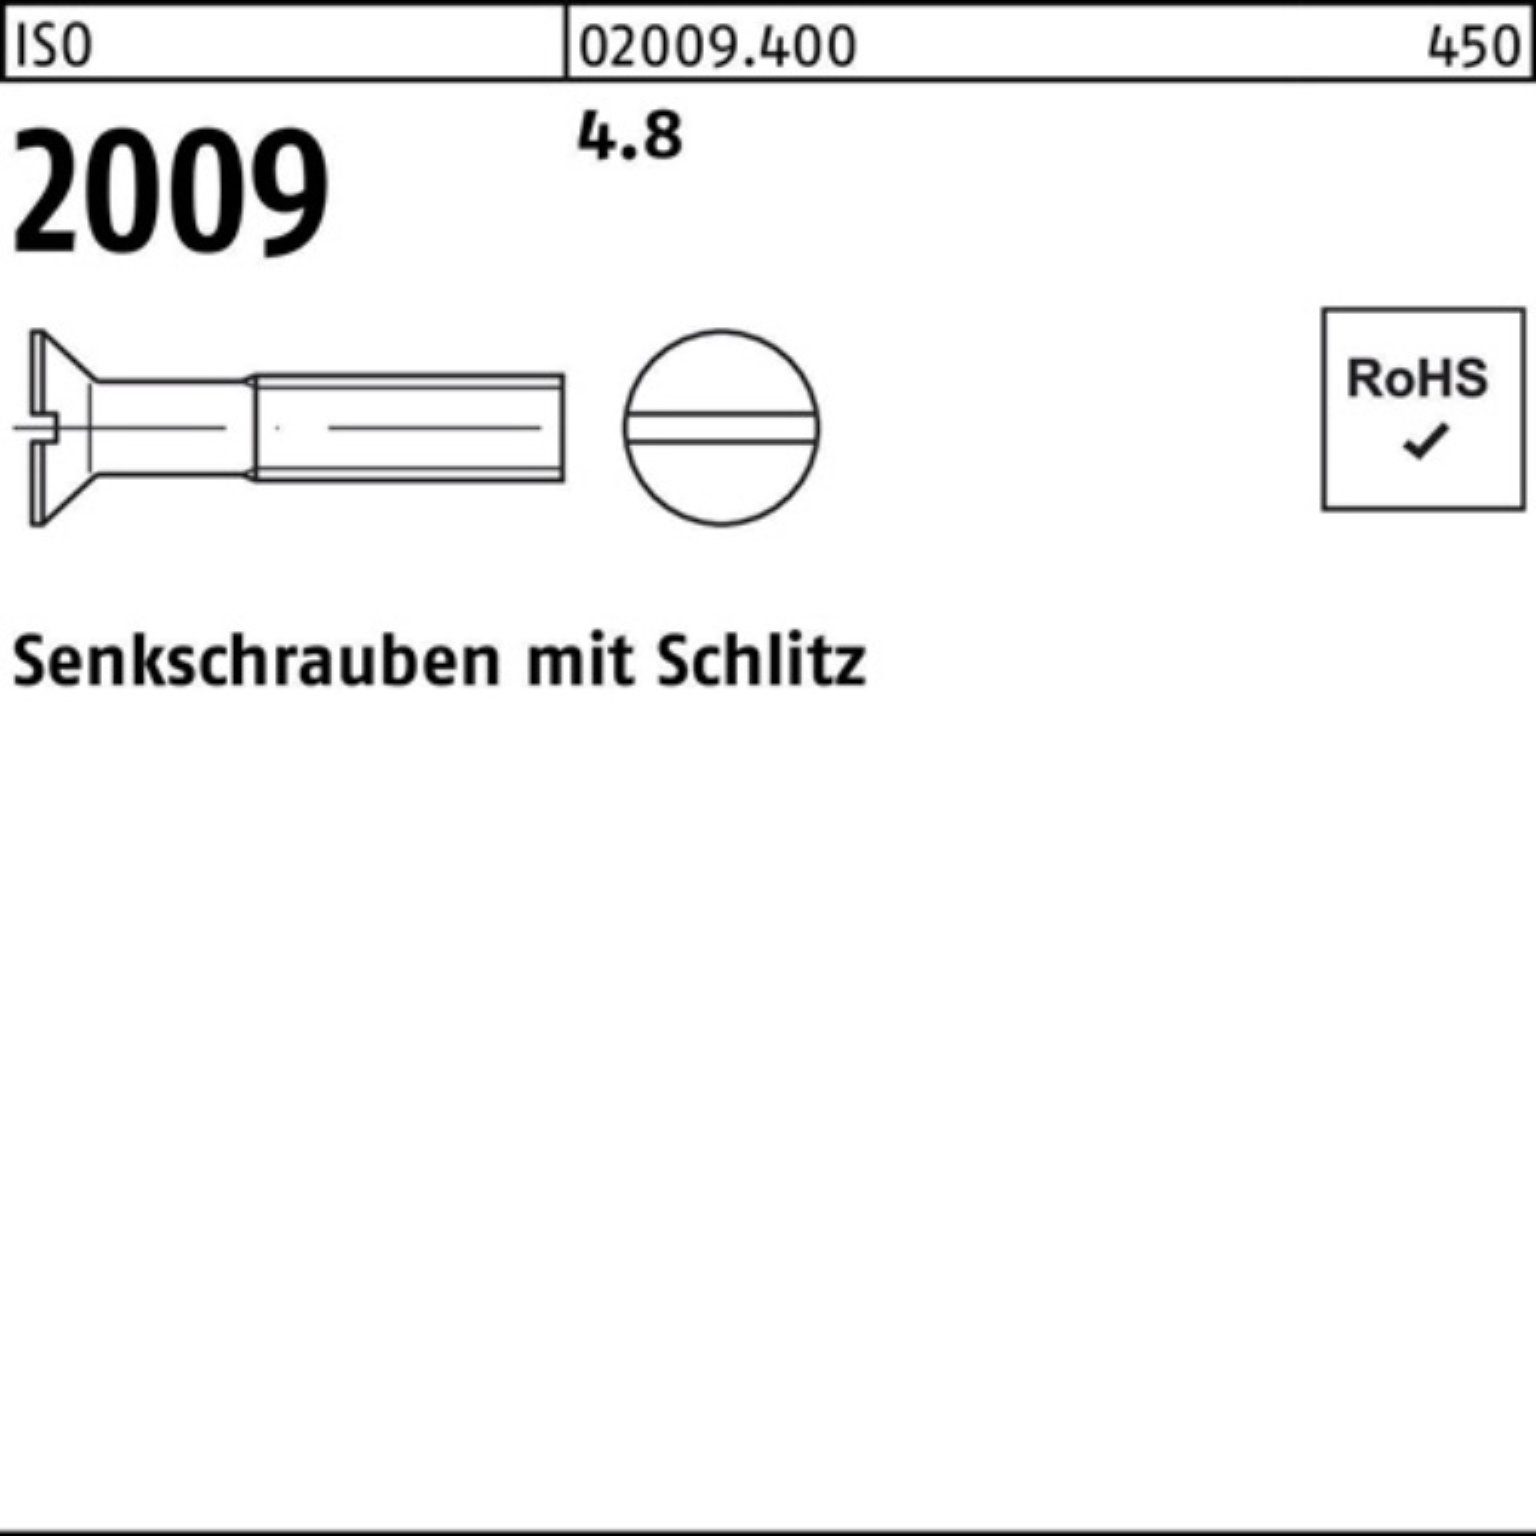 Senkschraube 2009 Senkschraube Schlitz ISO ISO 200 Reyher Stück 500 500er 35 Pack M5x 4.8